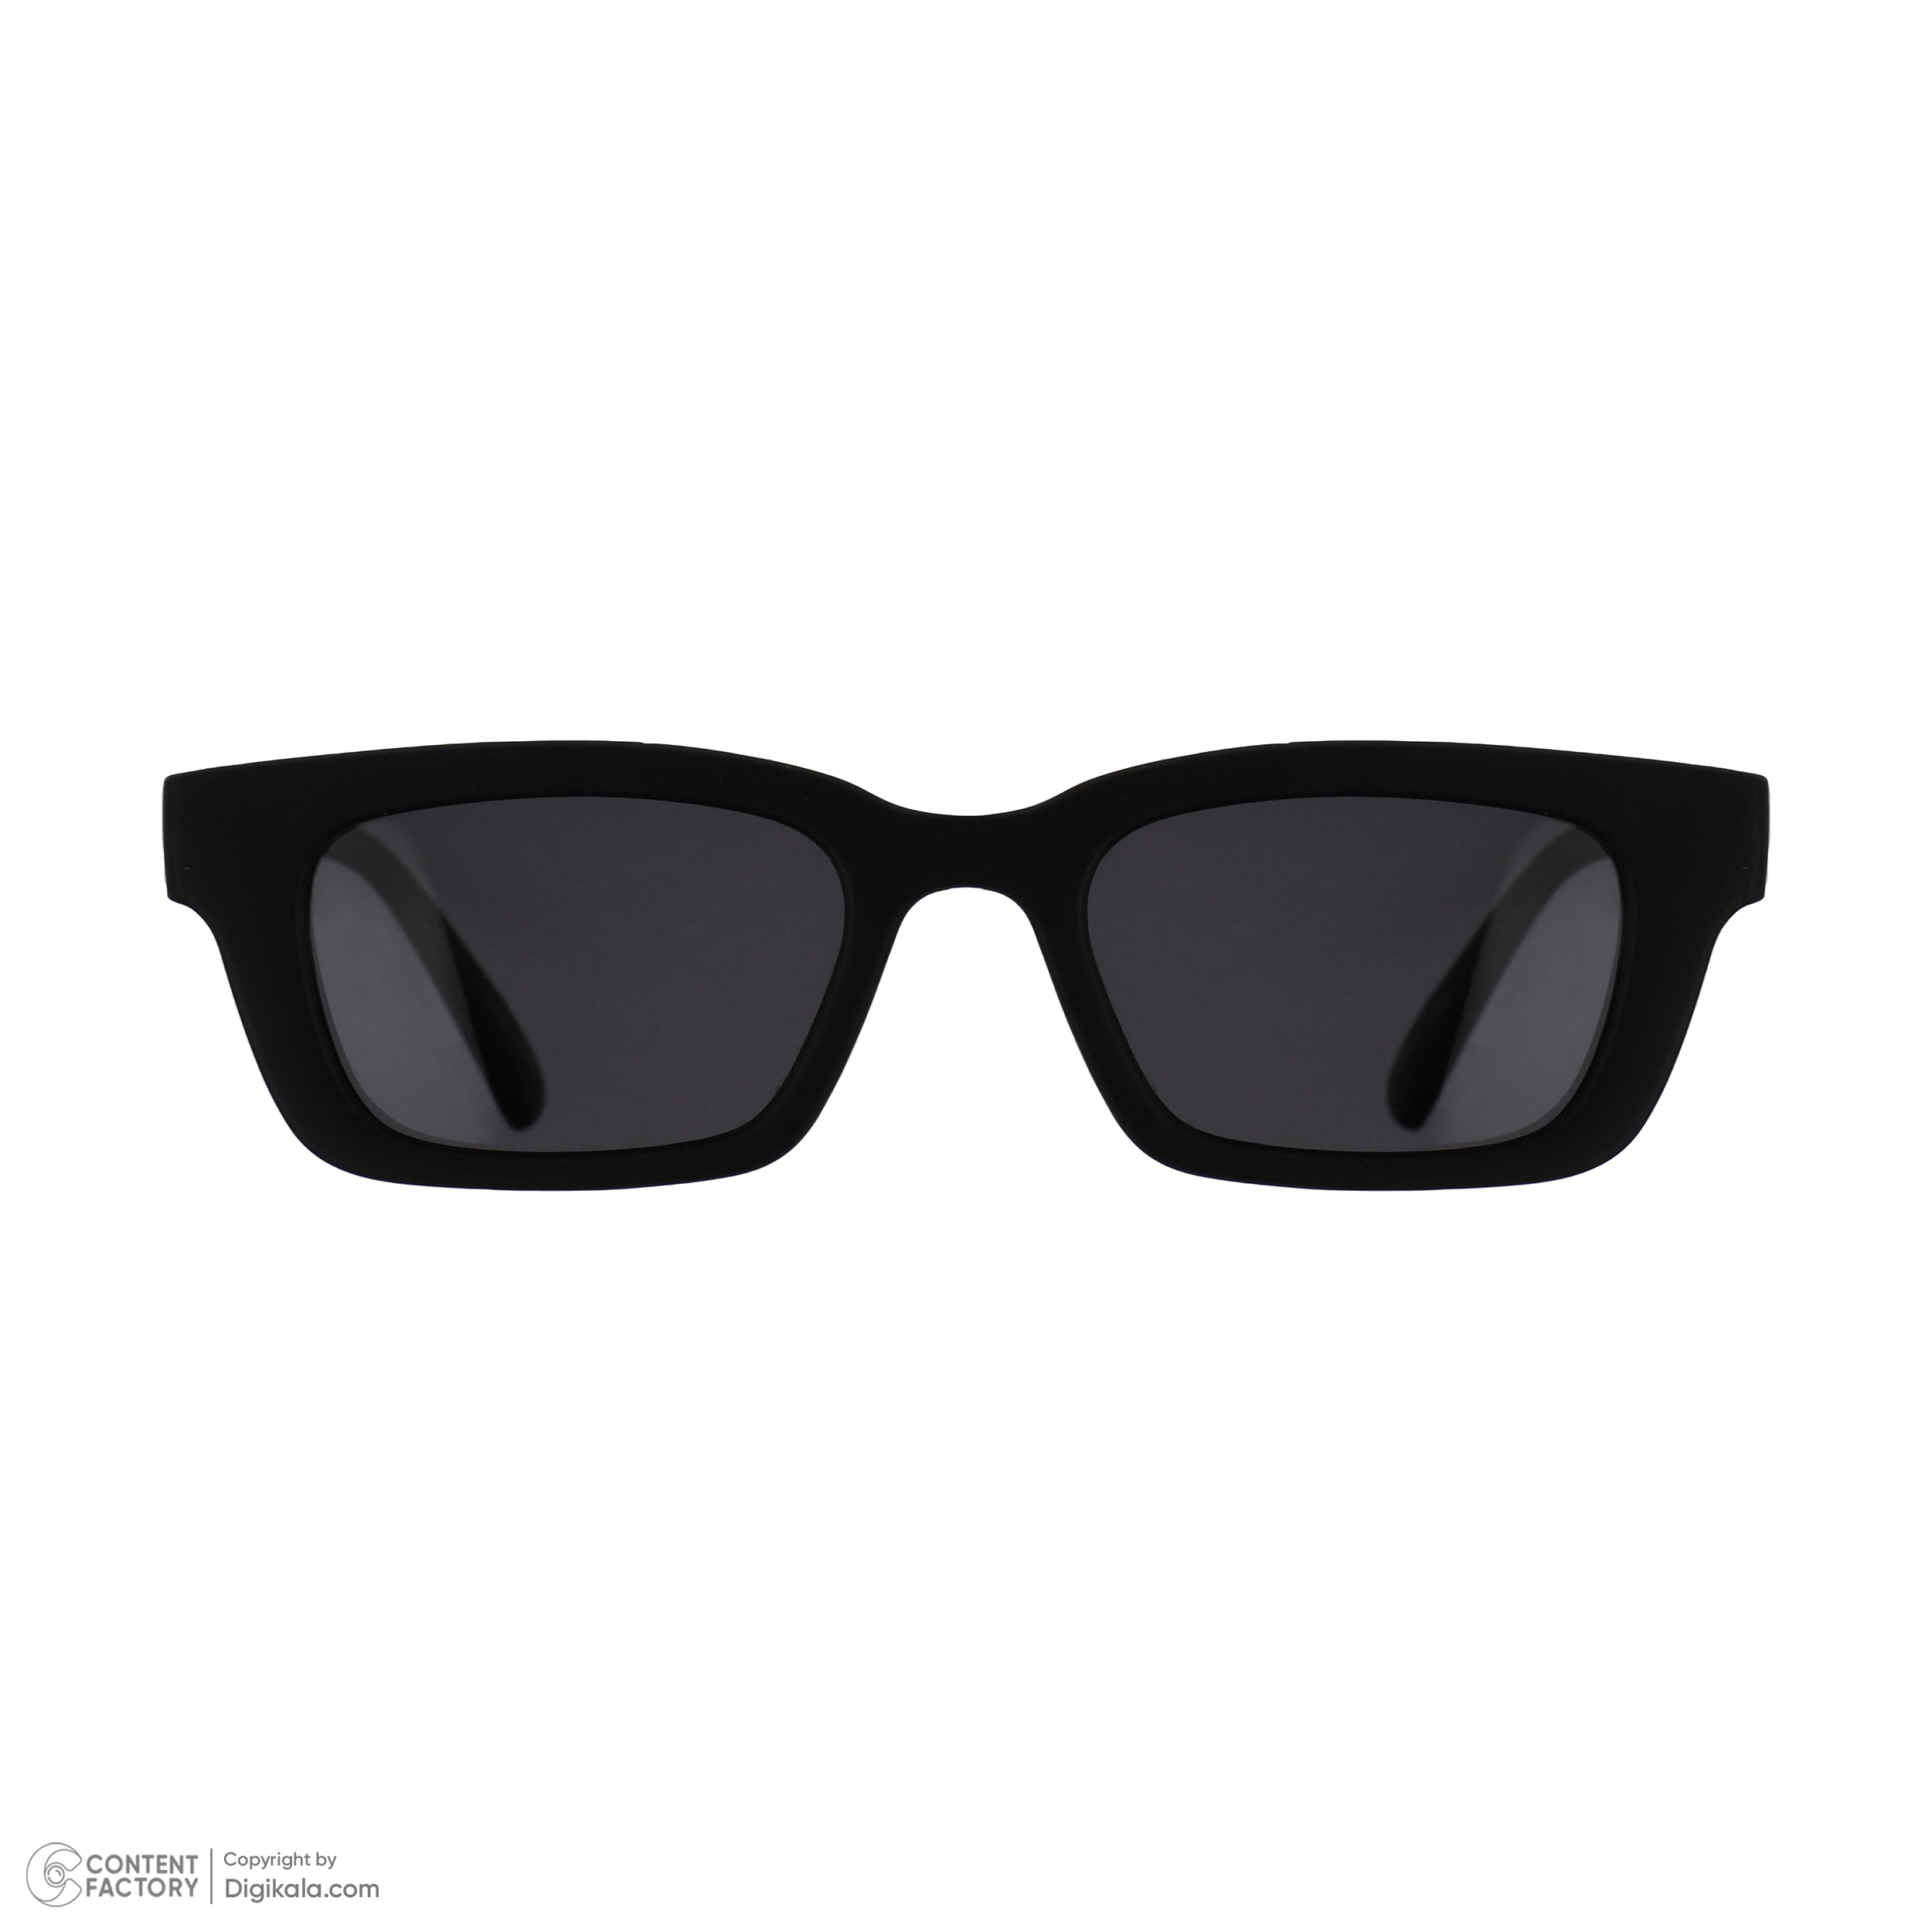 عینک آفتابی زنانه ونتی مدل 1106 c2 -  - 2